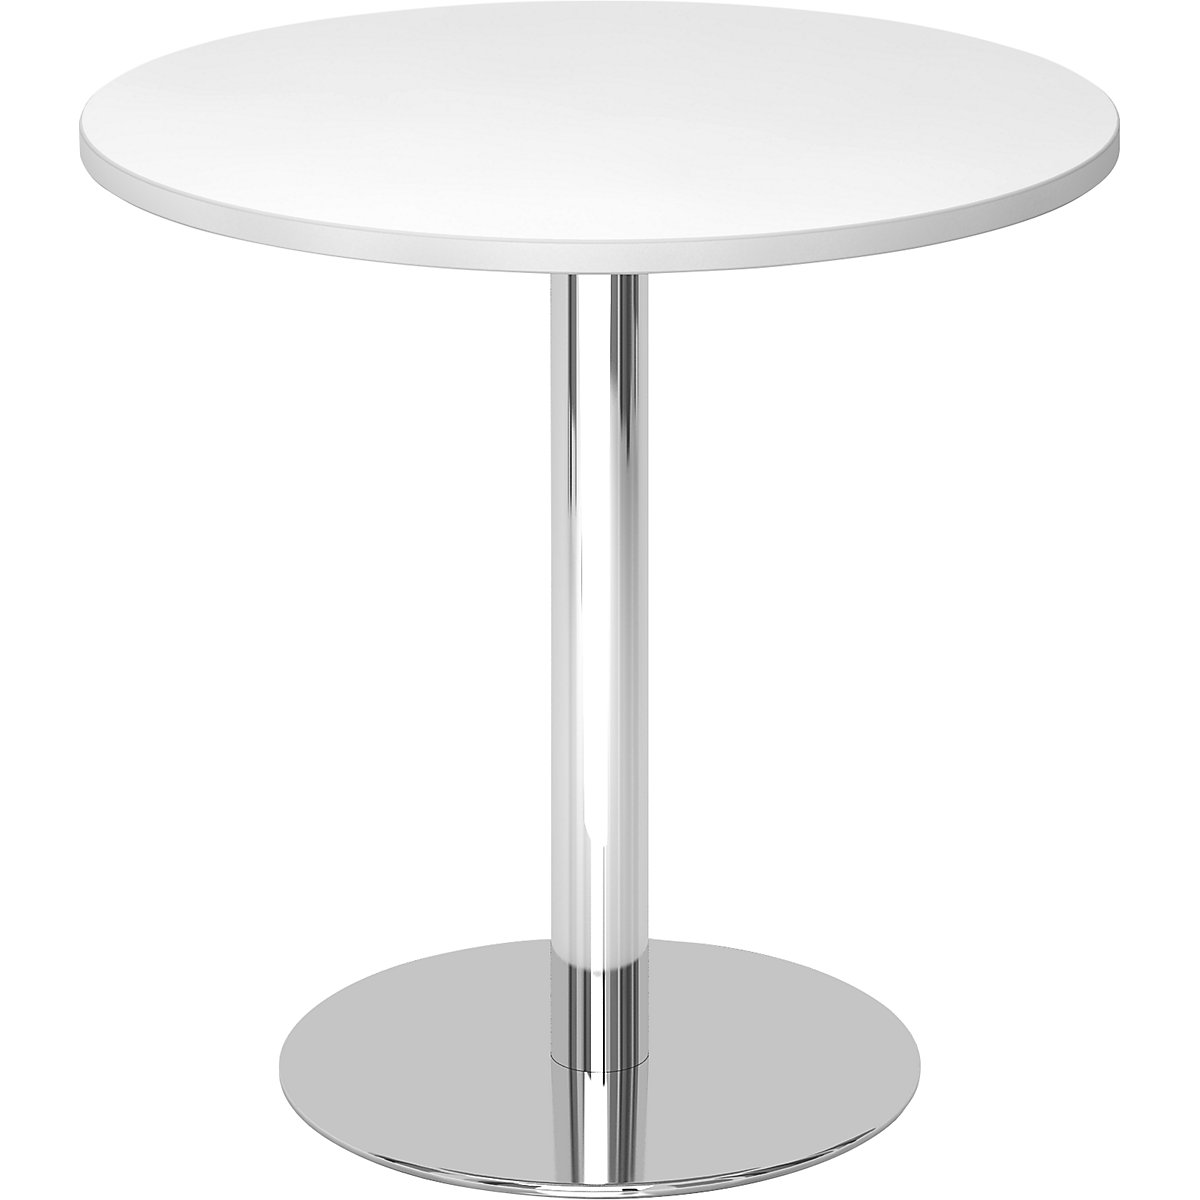 Tárgyalóasztal, Ø 800 mm, 755 mm magas, krómozott váz, fehér asztallap